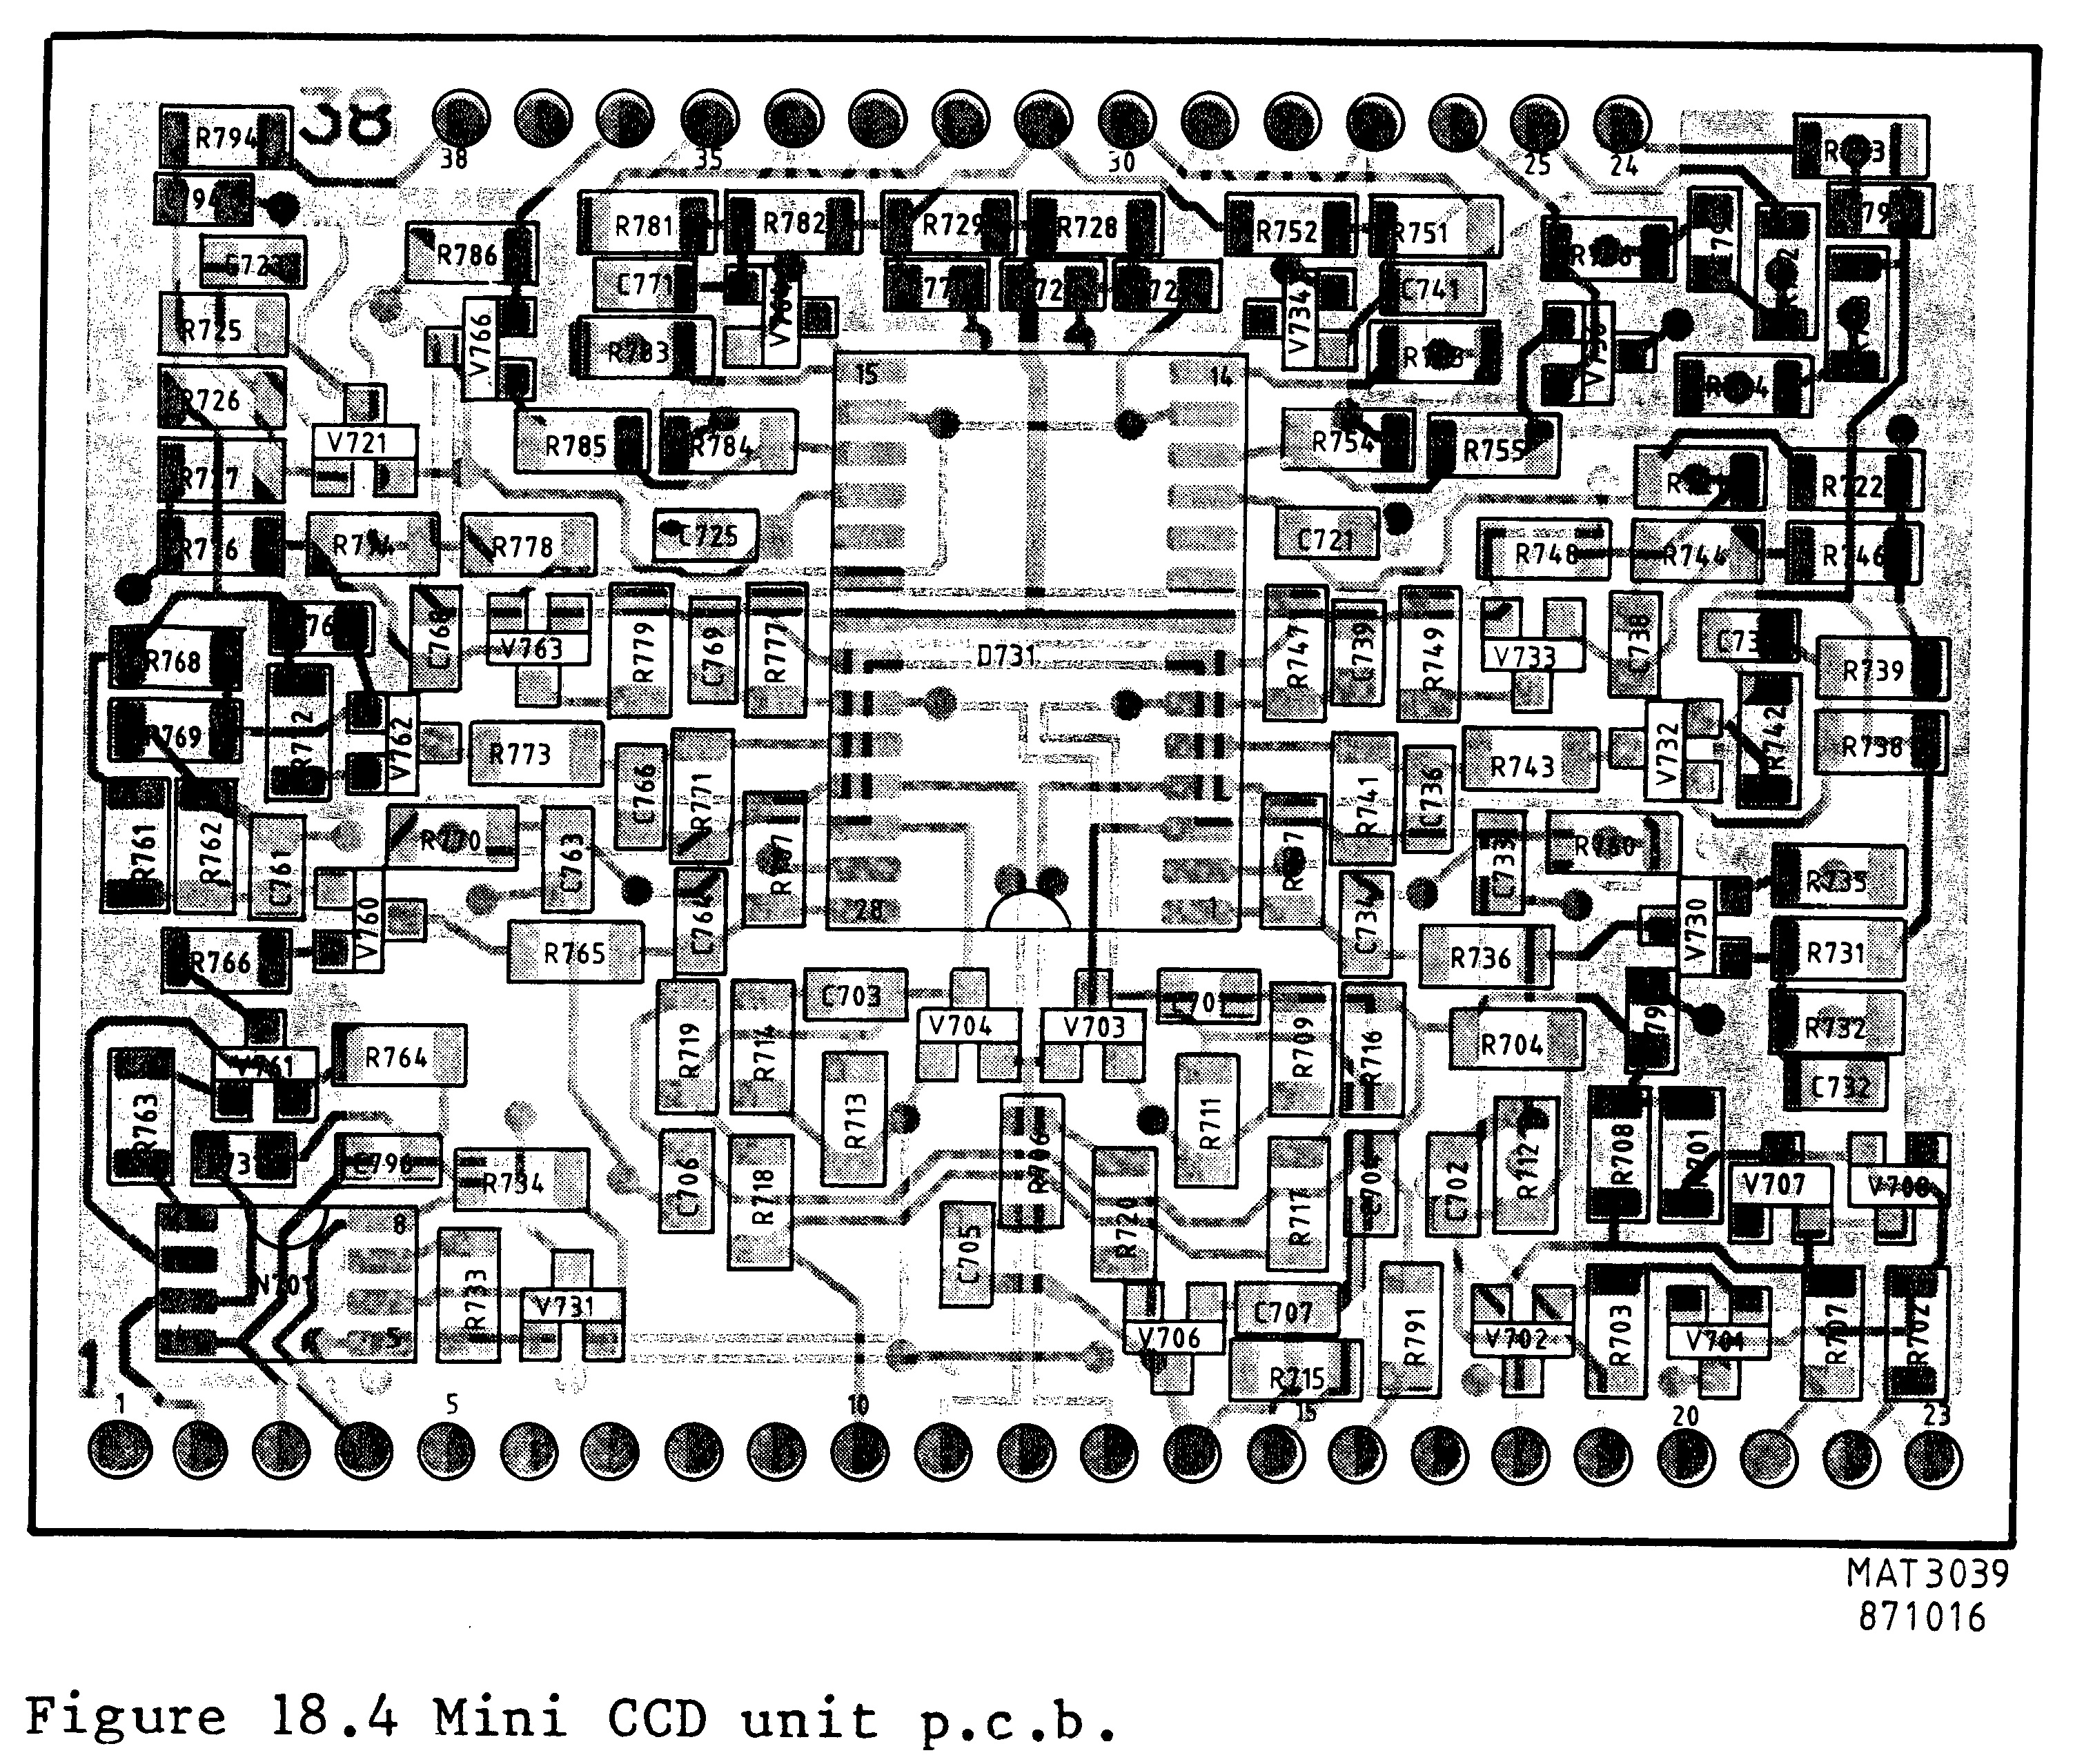 PM3350 circuit board